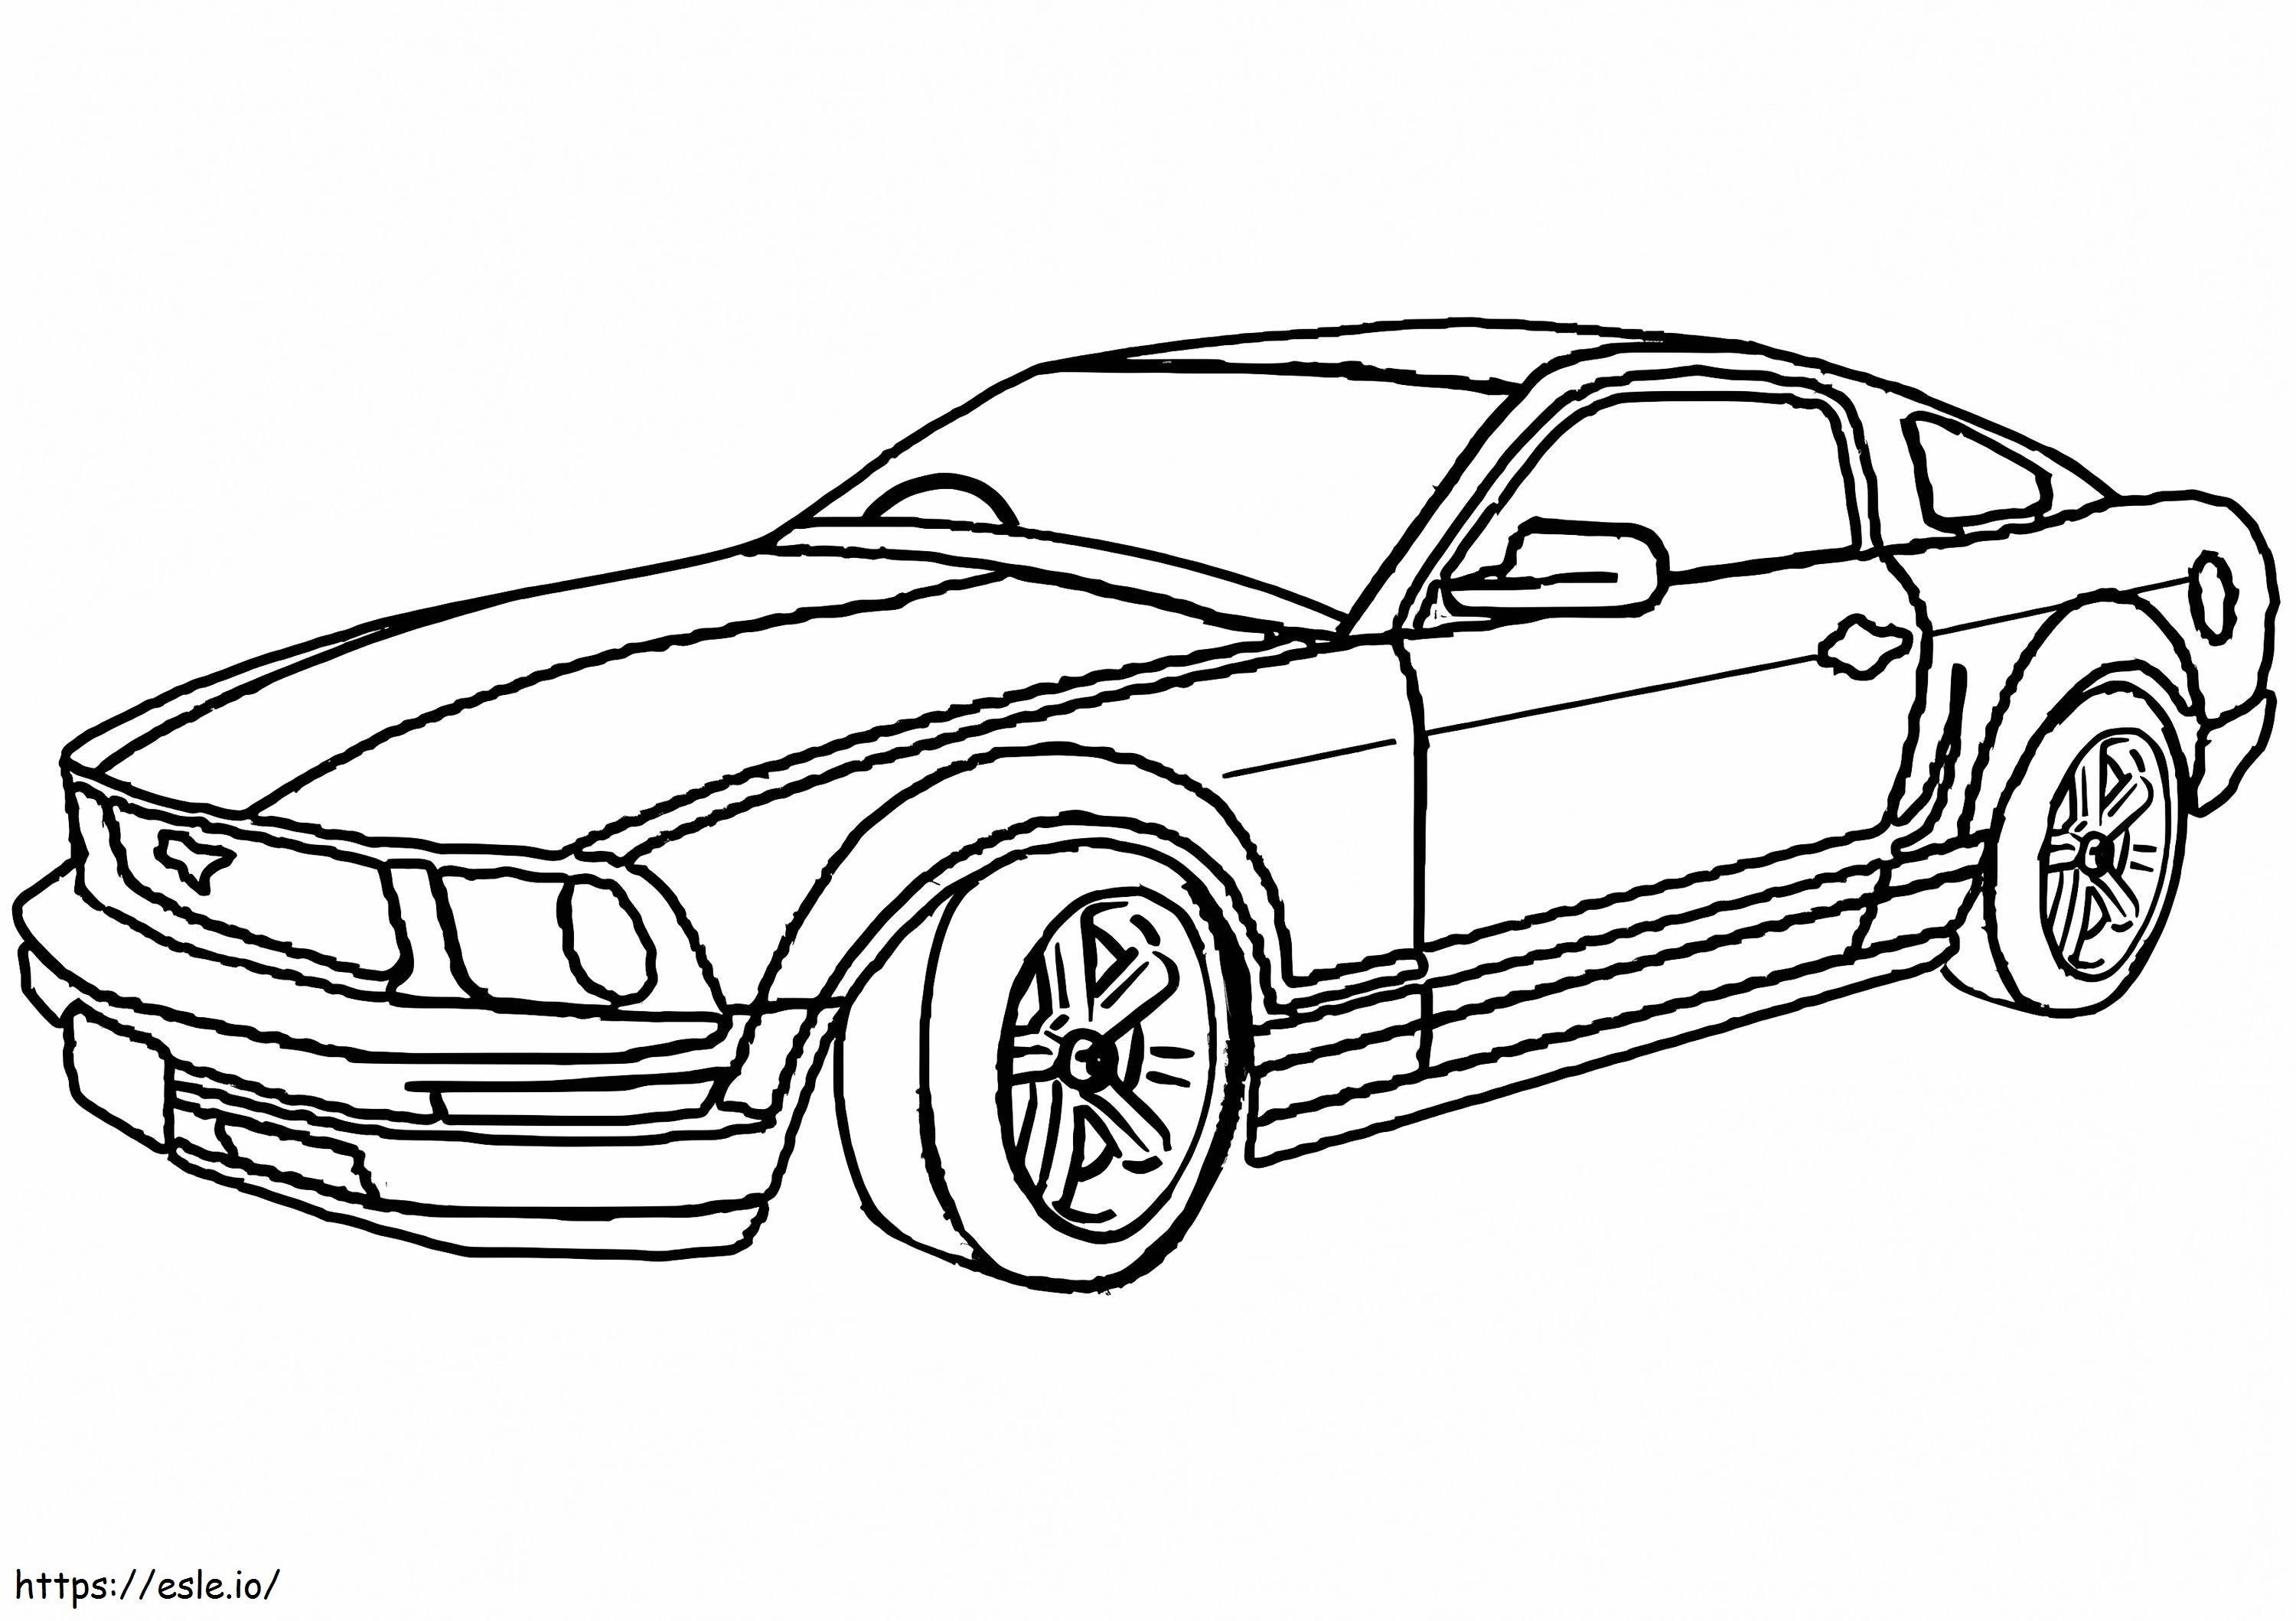 Mustang zum ausdrucken ausmalbilder